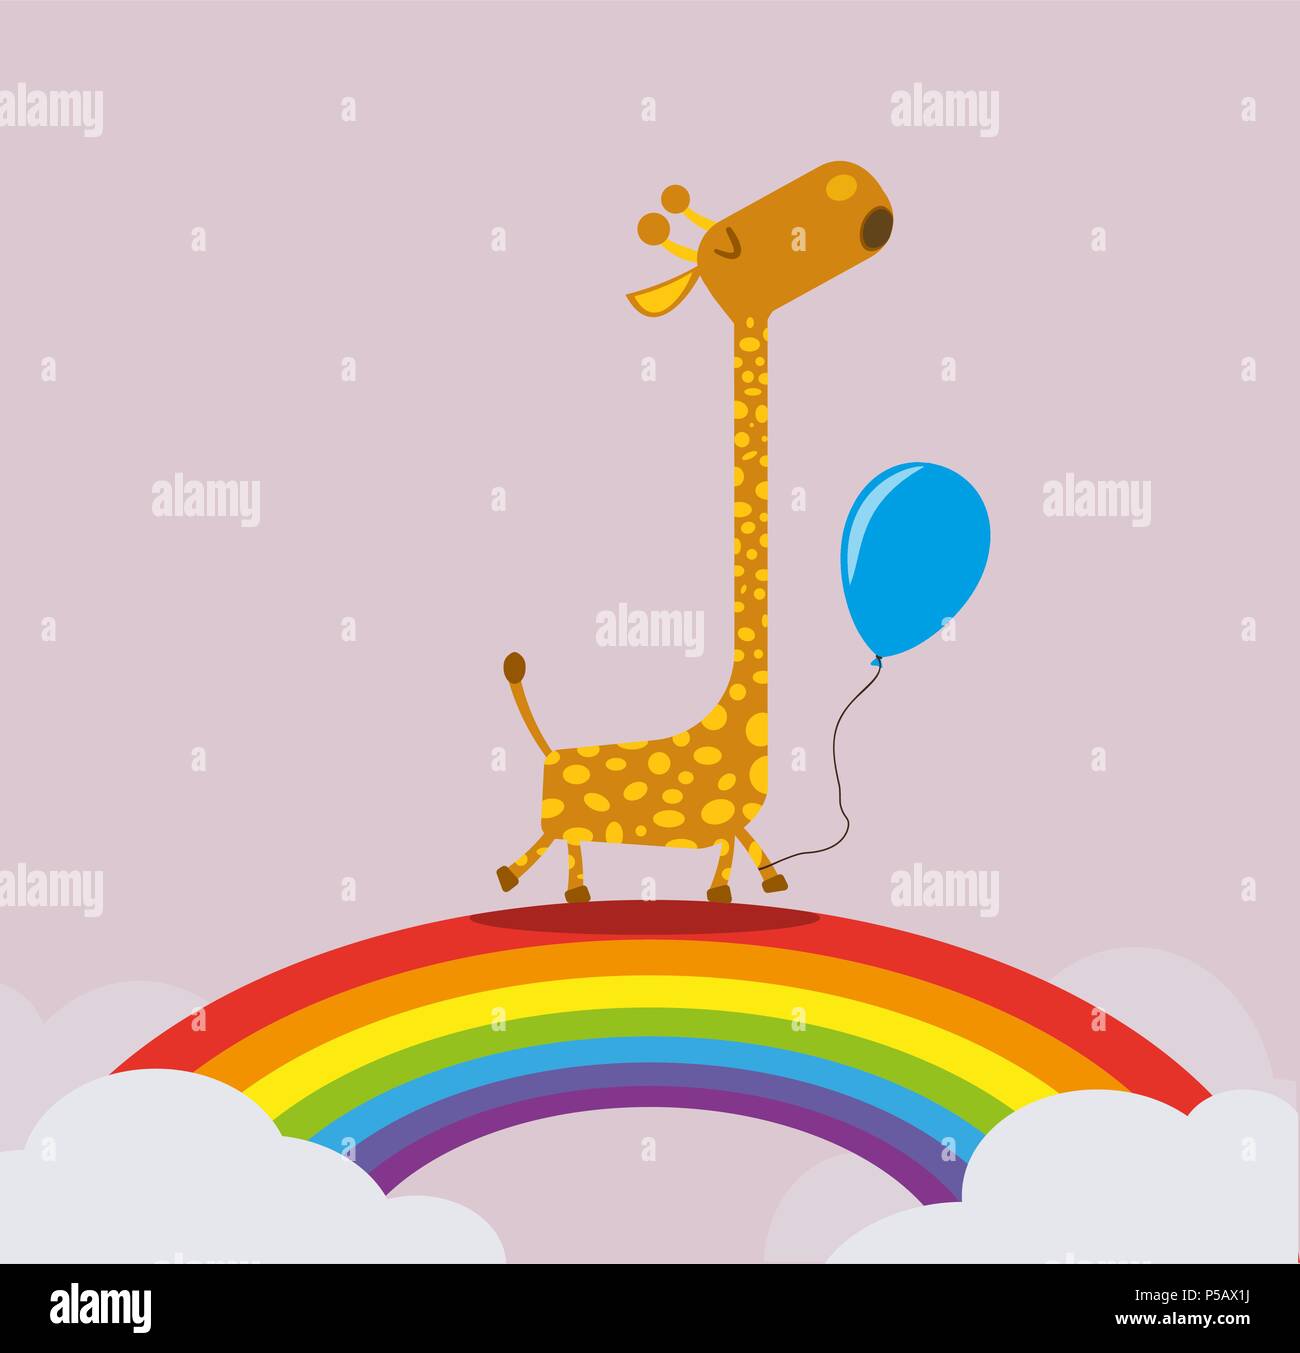 La giraffa holding palloncino camminando su rainbow greeting card modello illuistration Illustrazione Vettoriale